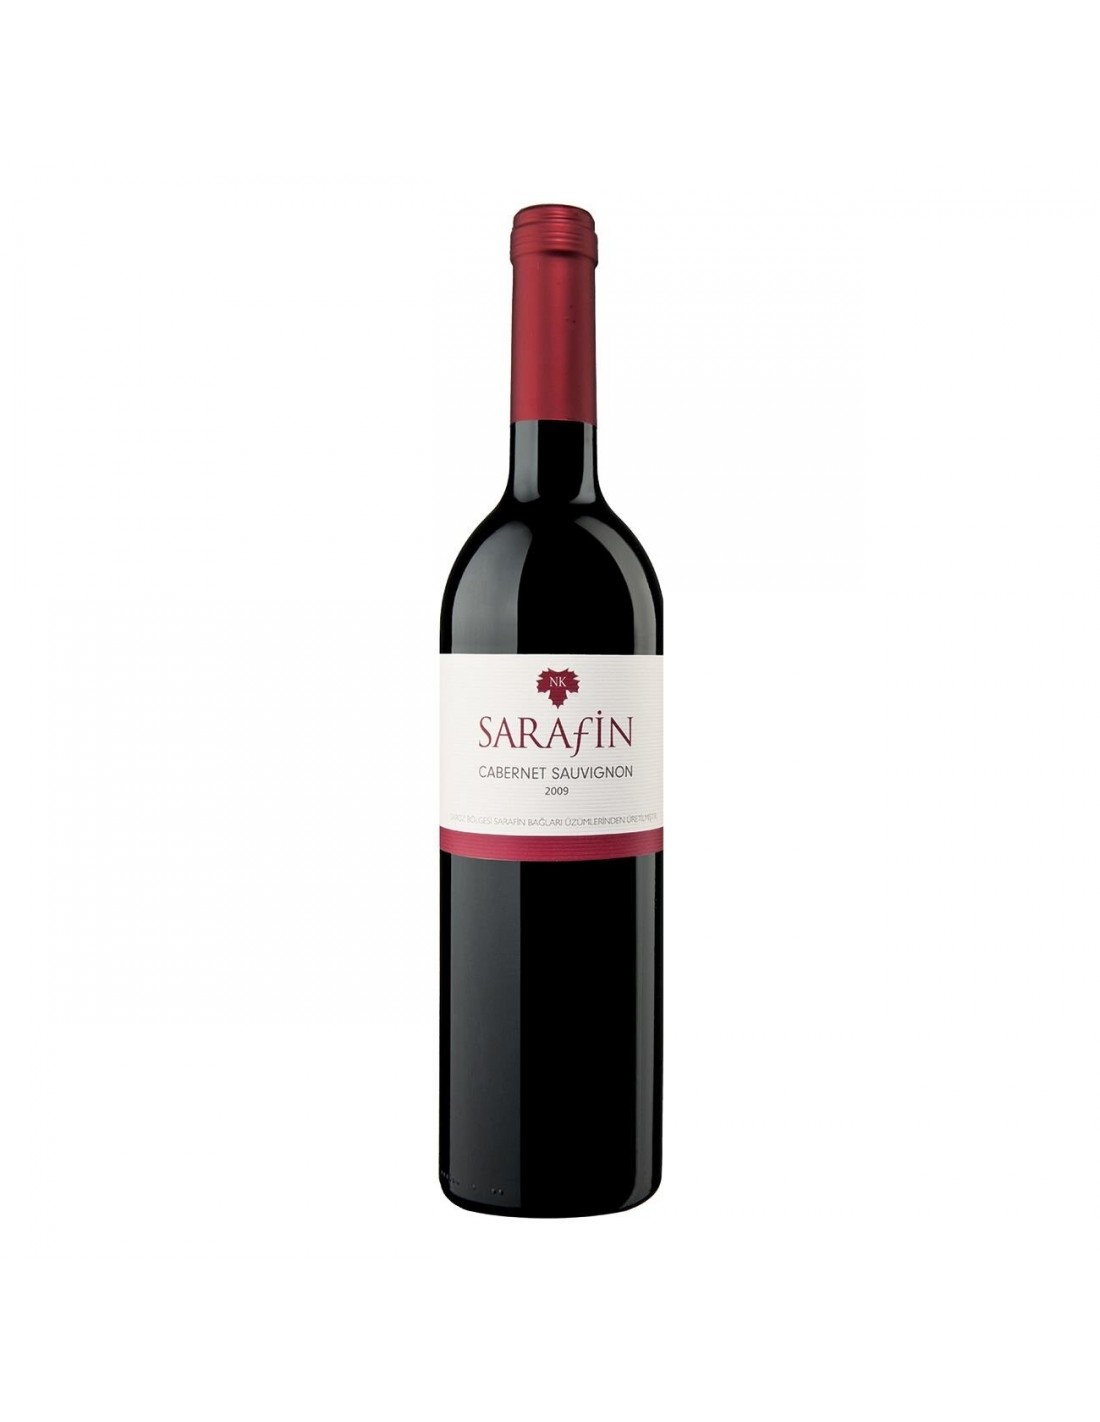 Vin rosu sec, Cabernet Sauvignon, Sarafin, 14.8% alc., 0.75L, Turcia alcooldiscount.ro